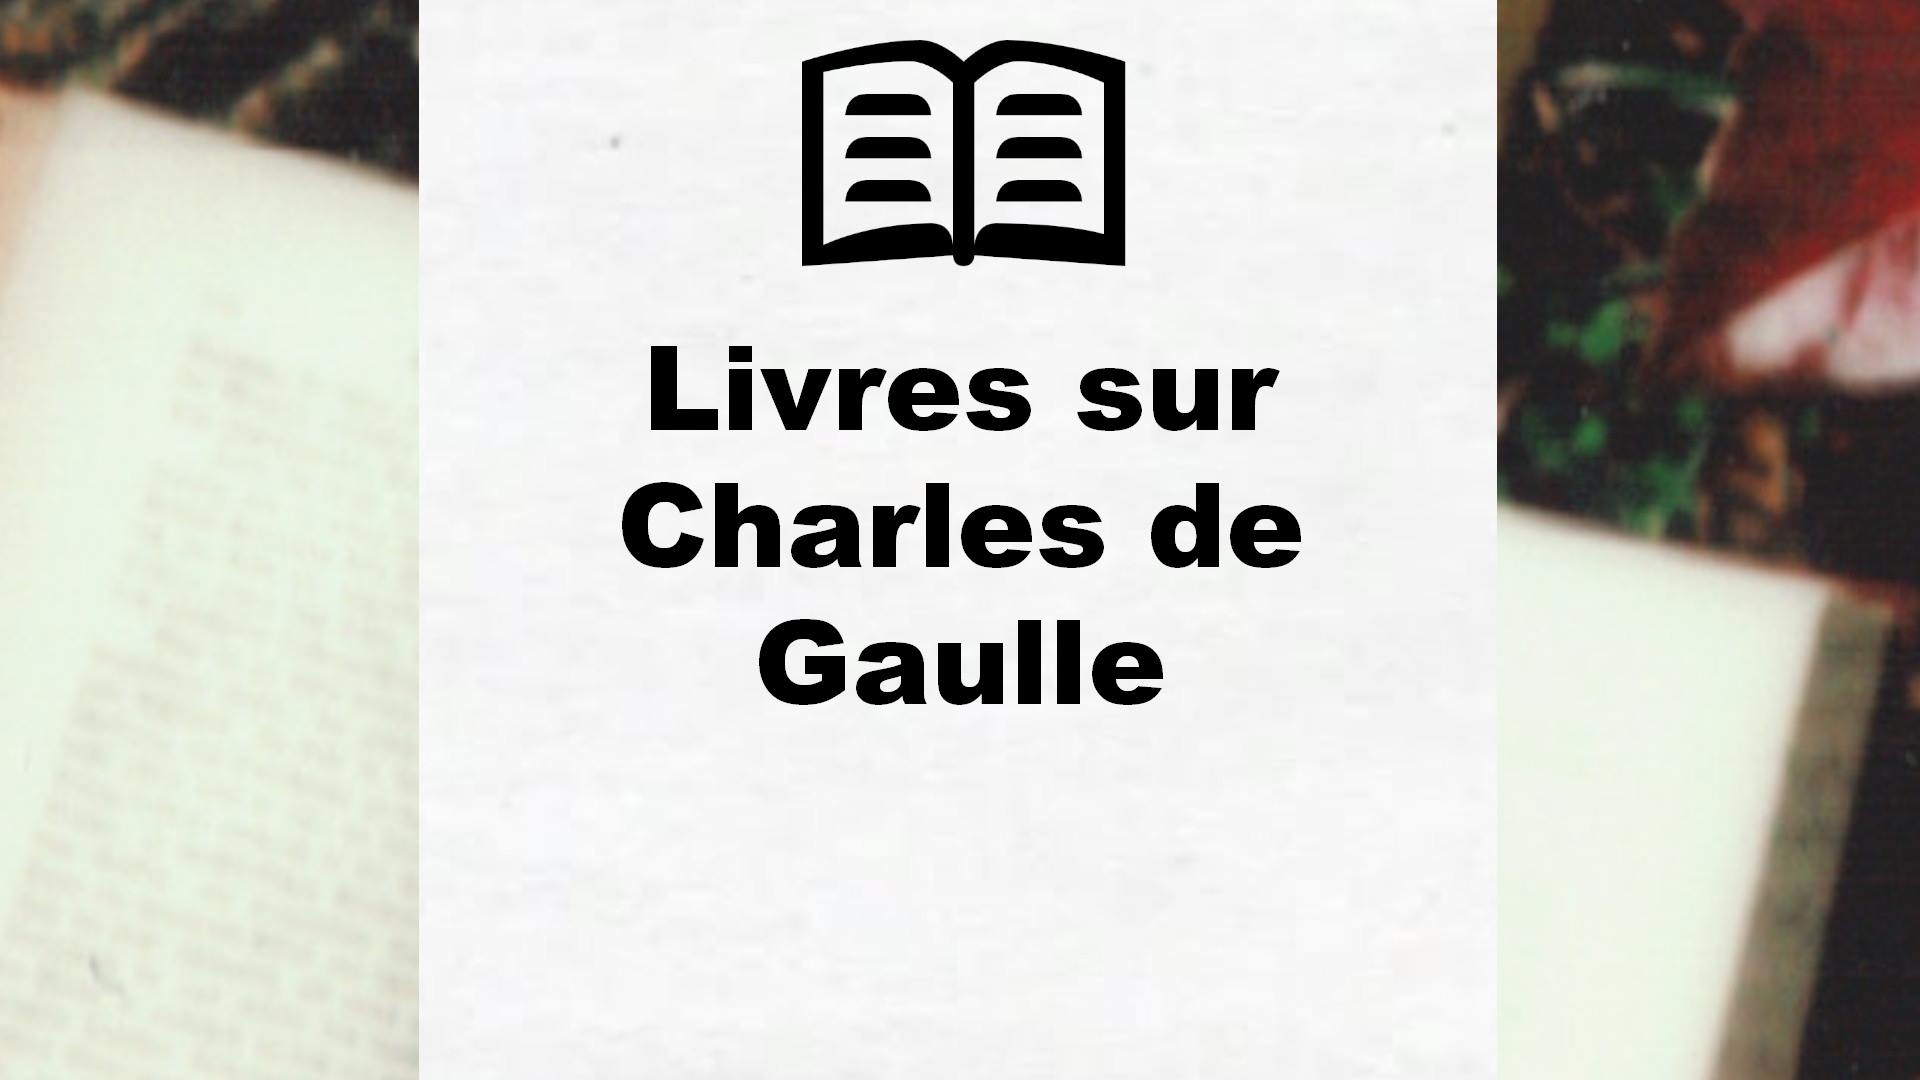 Livres sur Charles de Gaulle